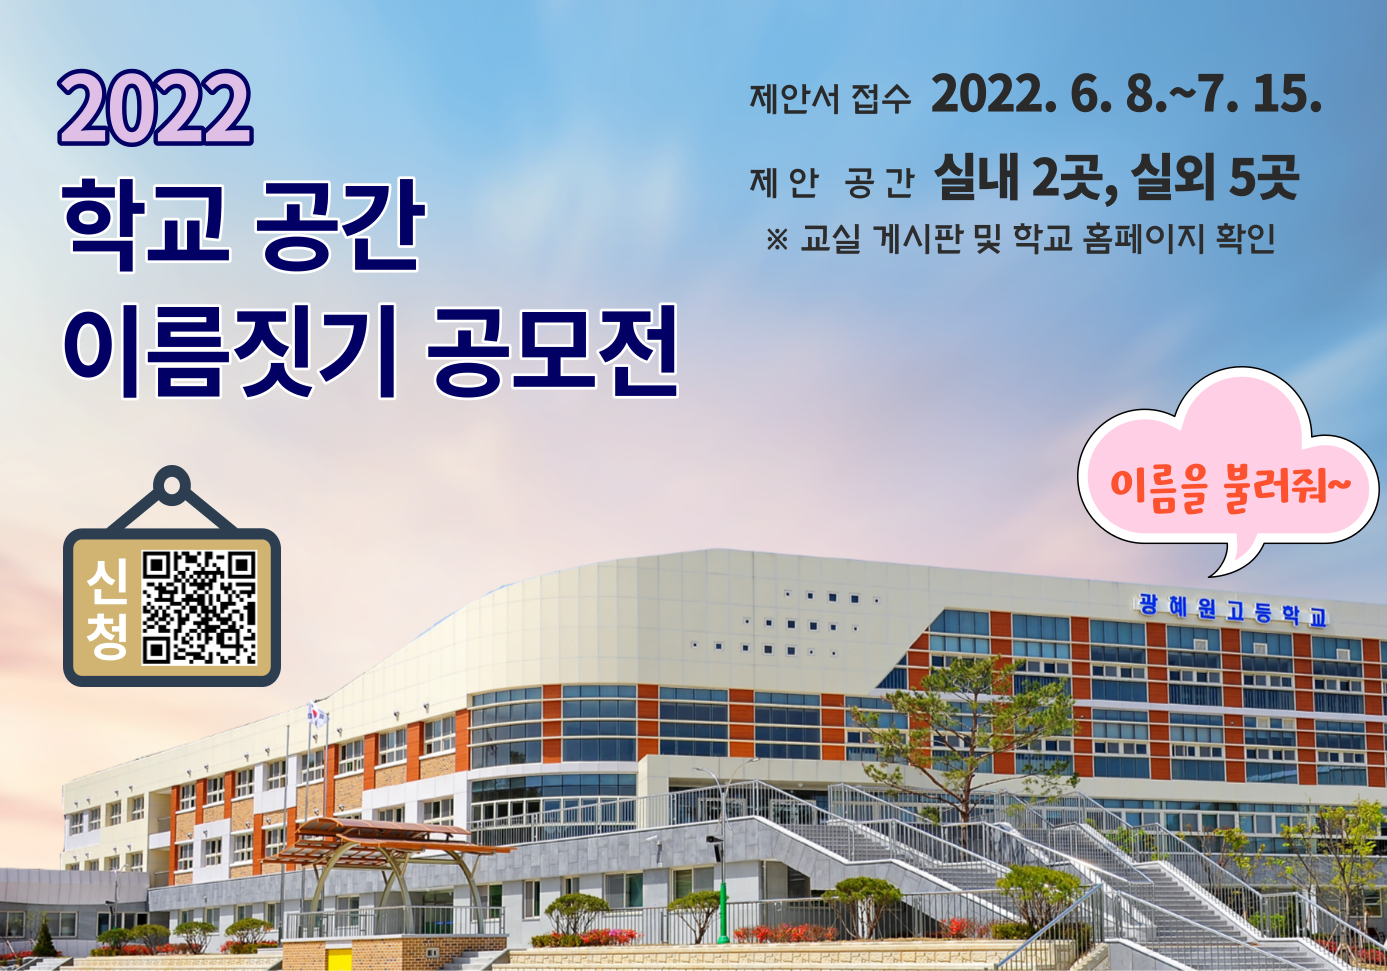 2022. 학교 공간 이름짓기 공모전 홍보 포스터